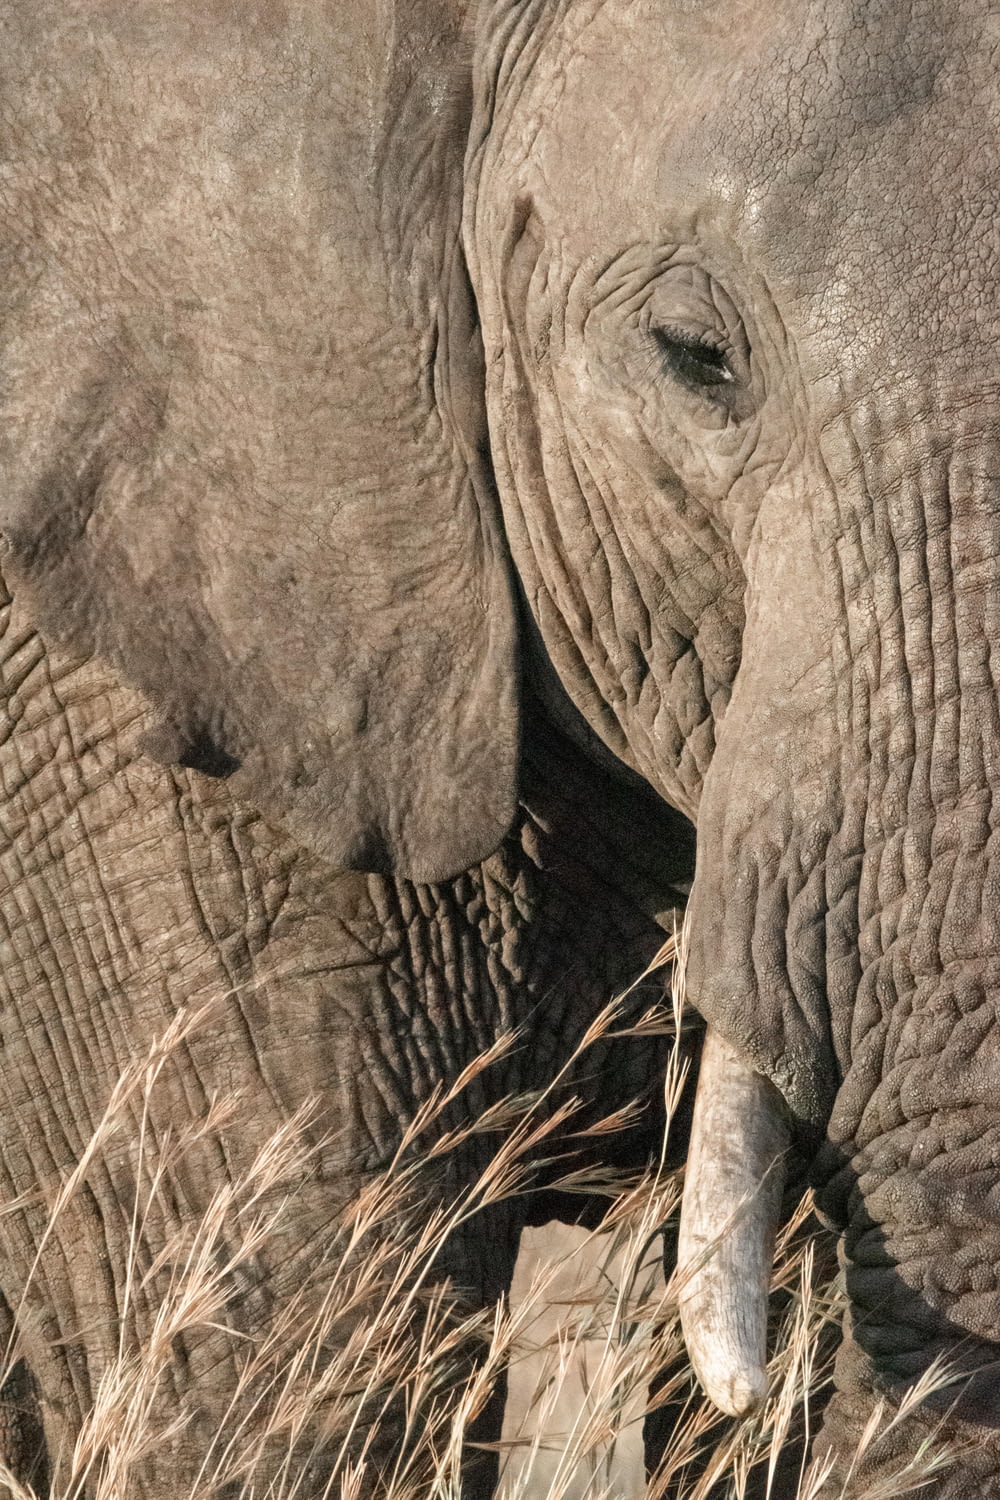 Fotografía de primer plano de la cara del elefante